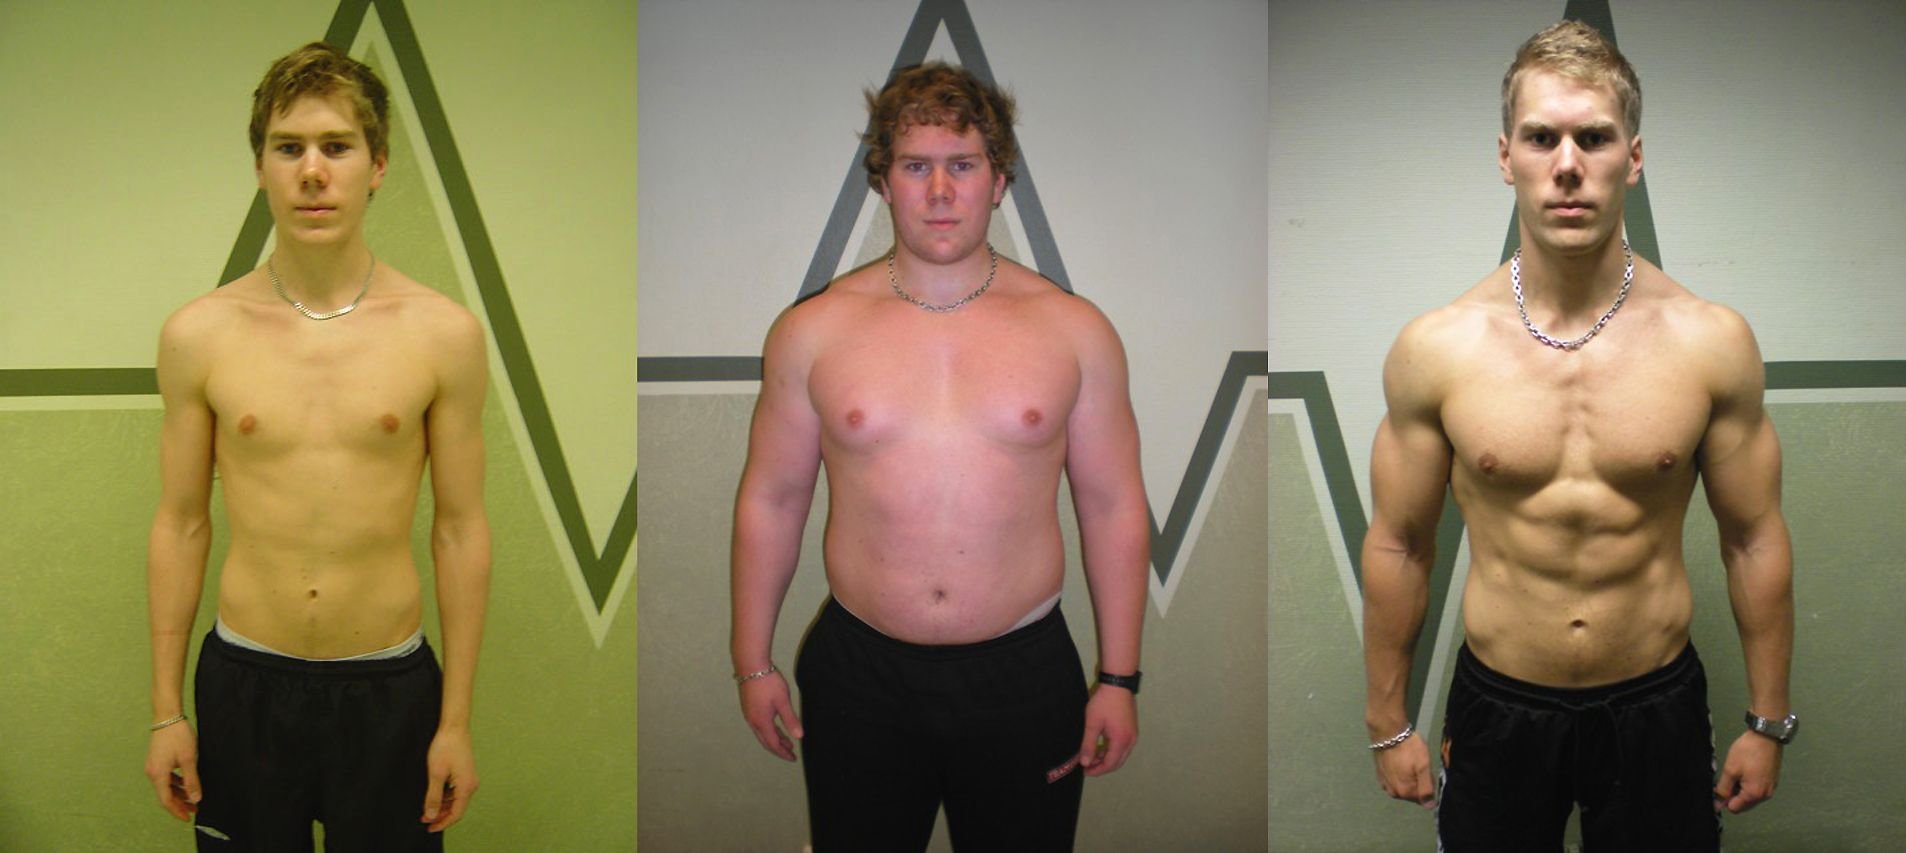 Как измениться за 1 год. Эктоморф 80 кг. Эктоморф 90 кг. Трансформация тела. Прогресс за год тренировок.